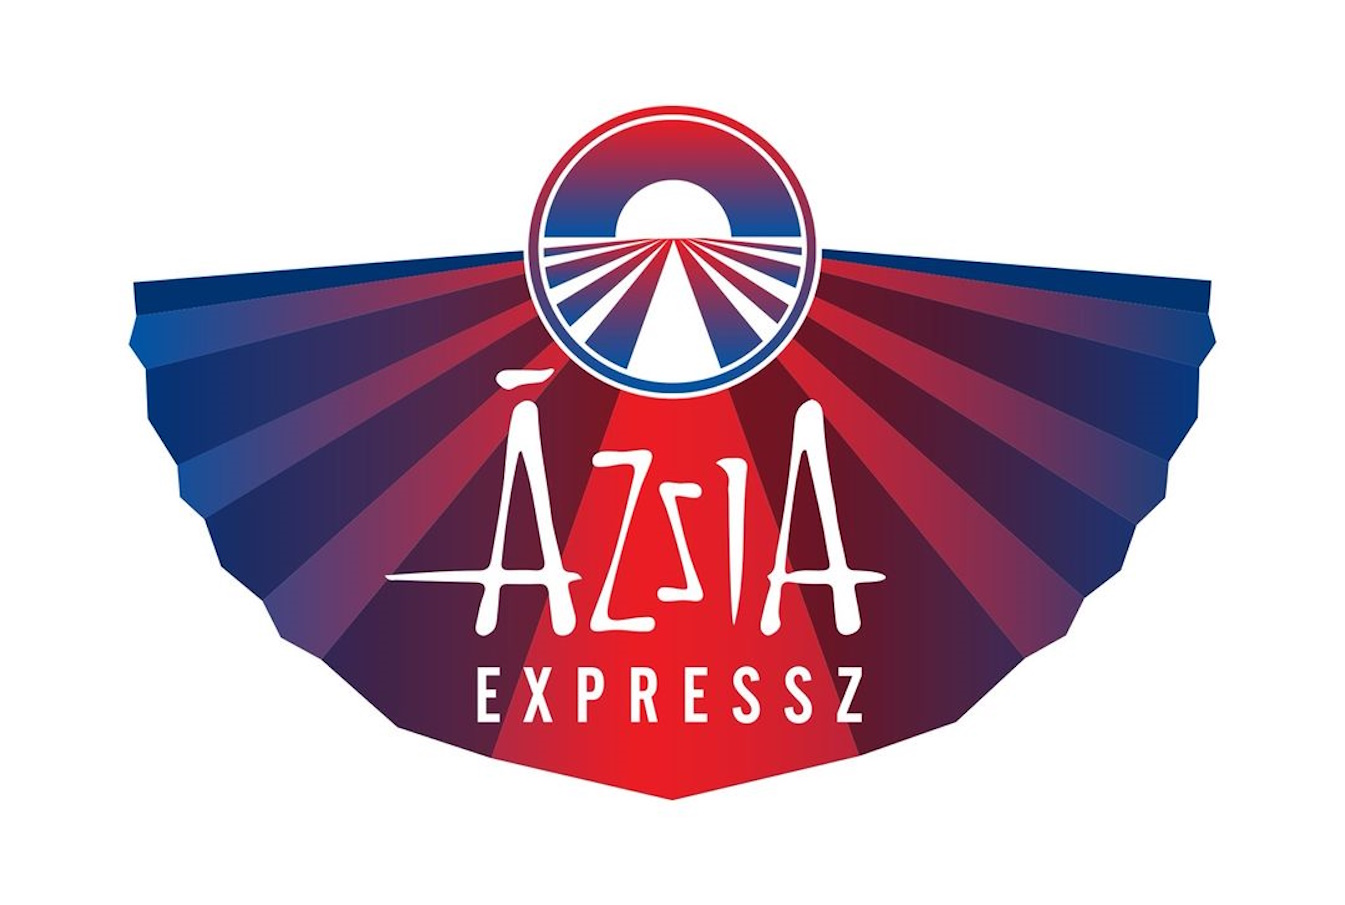 Íme az Ázsia Expressz idei szereplői, kiderült, helyesek voltak-e a pletykák